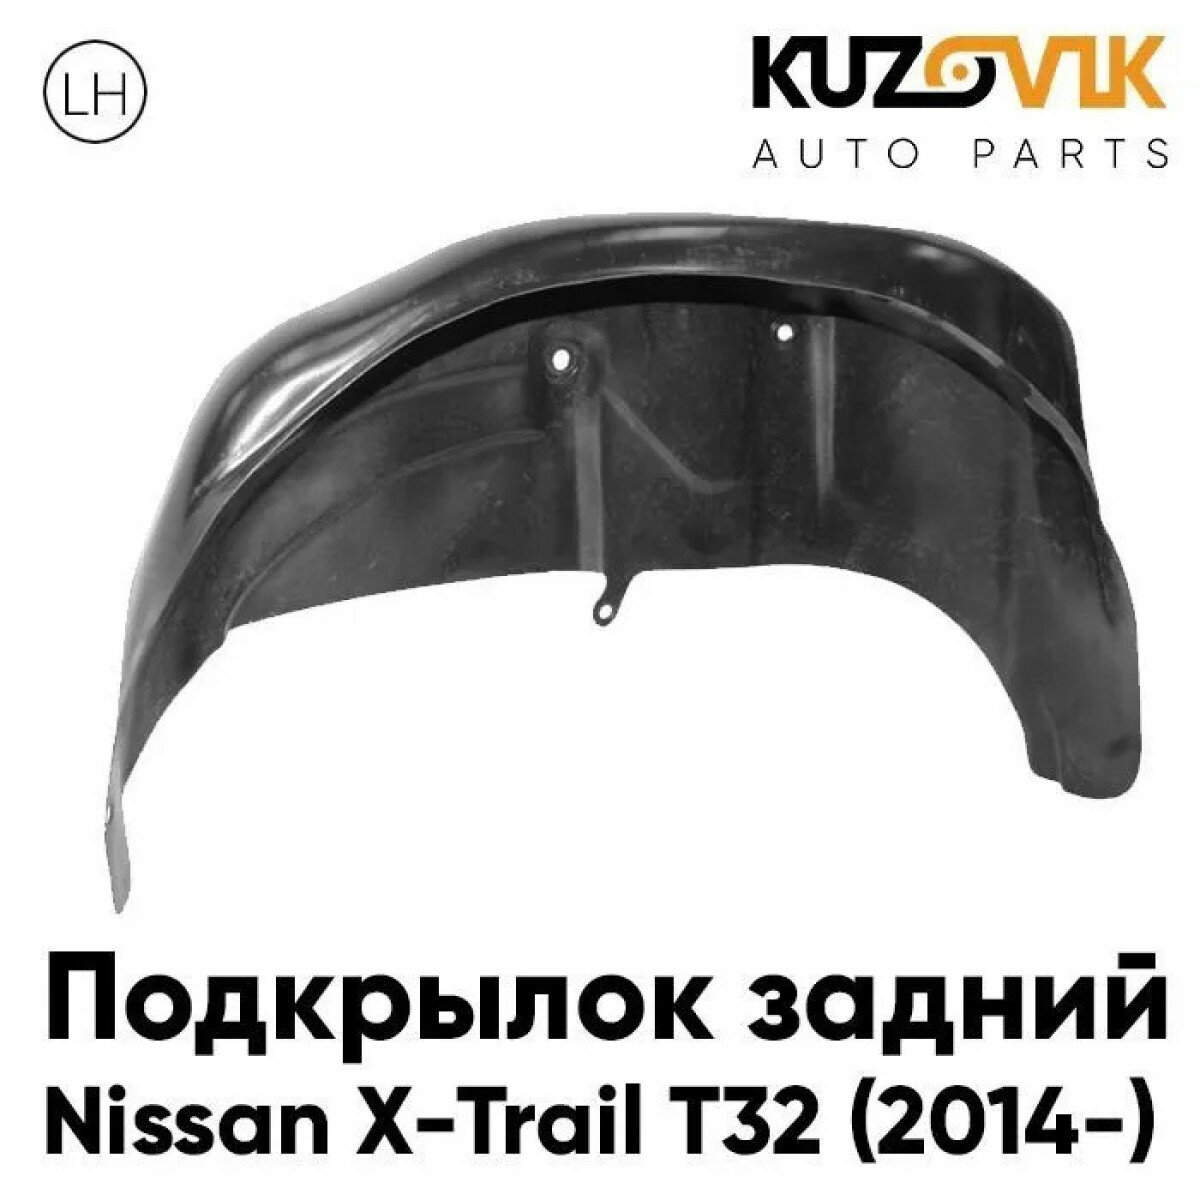 Подкрылок задний левый Nissan X-Trail T32 (2014-)